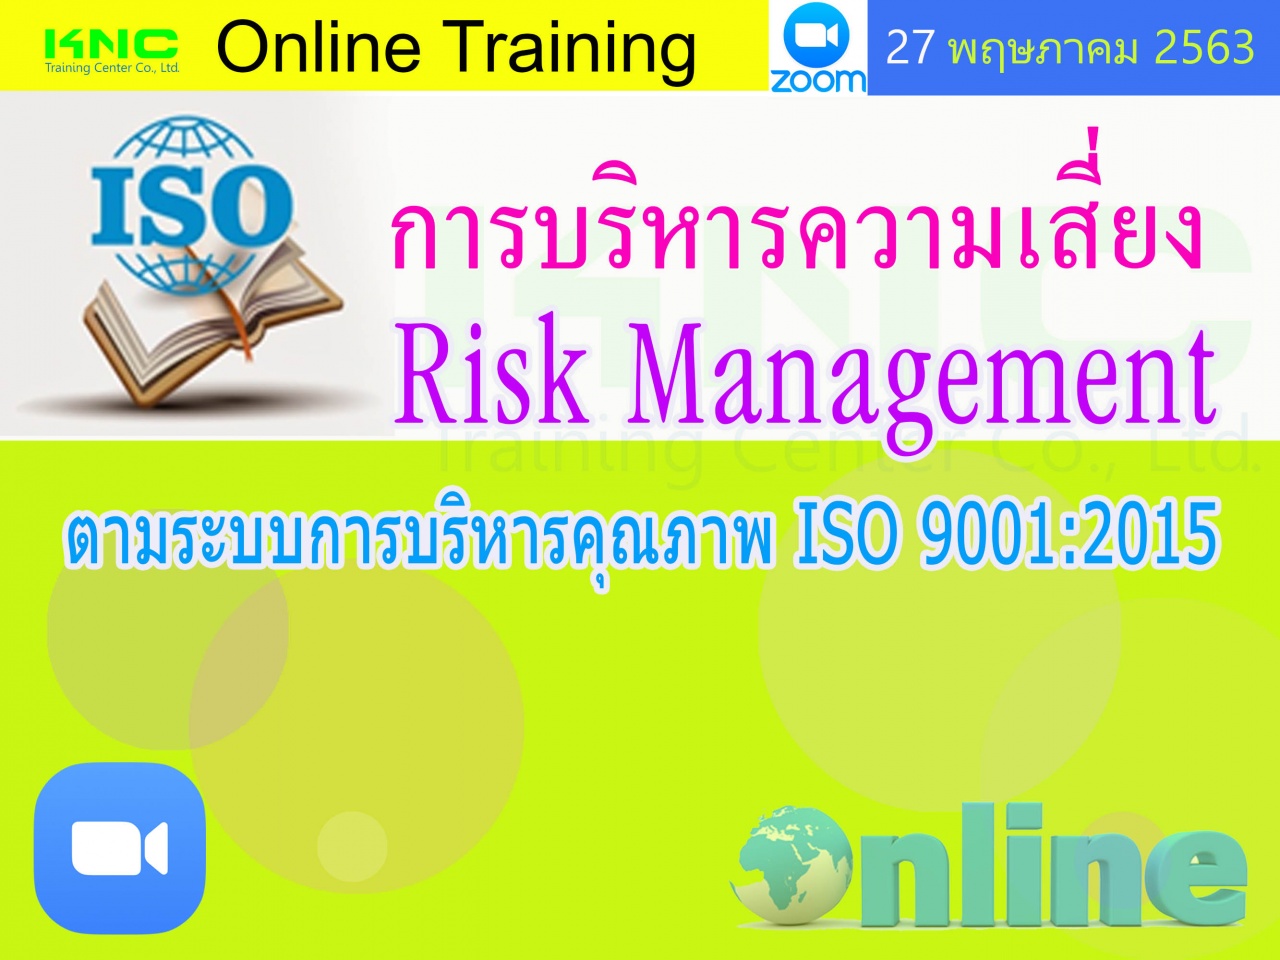 สัมมนาออนไลน์ : การบริหารความเสี่ยง Risk Management ตามระบบการบริหารคุณภาพ ISO 9001:2015